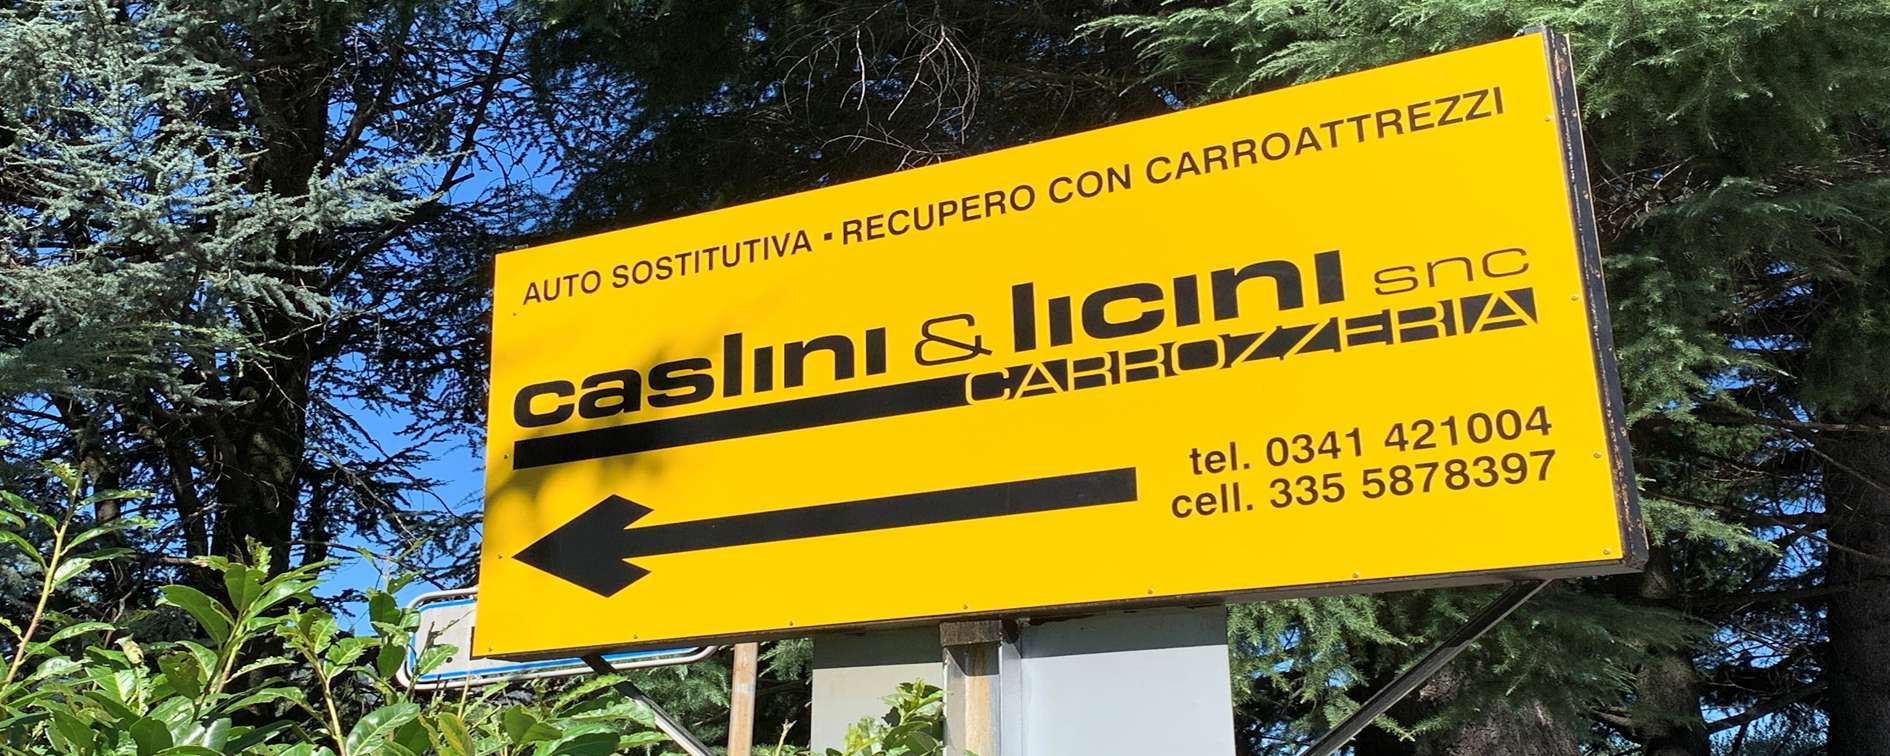 #Carrozzeria Caslini & Licini Snc